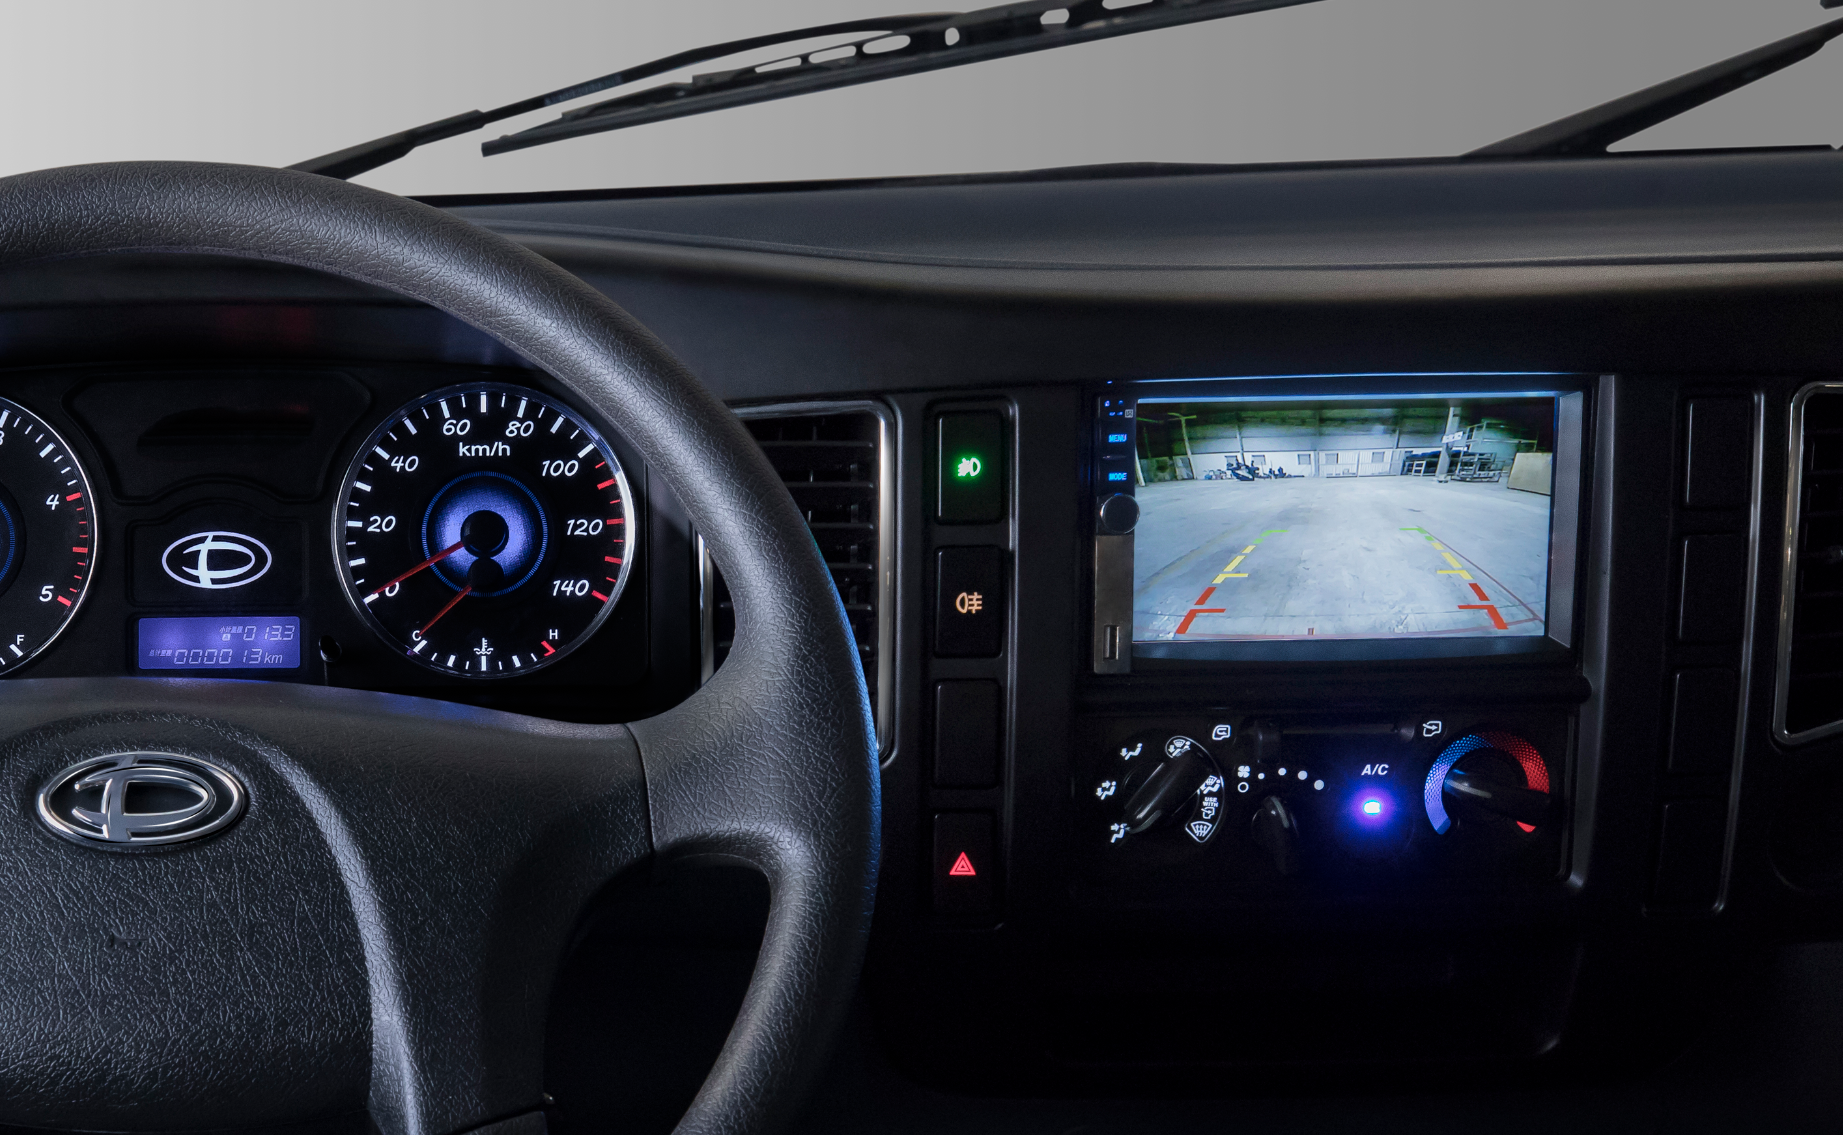 Tera190SL và Tera345SL trang bị màn hình cảm ứng 7 inch và camera lùi, hỗ trợ tài xế điều khiển xe an toàn hơn